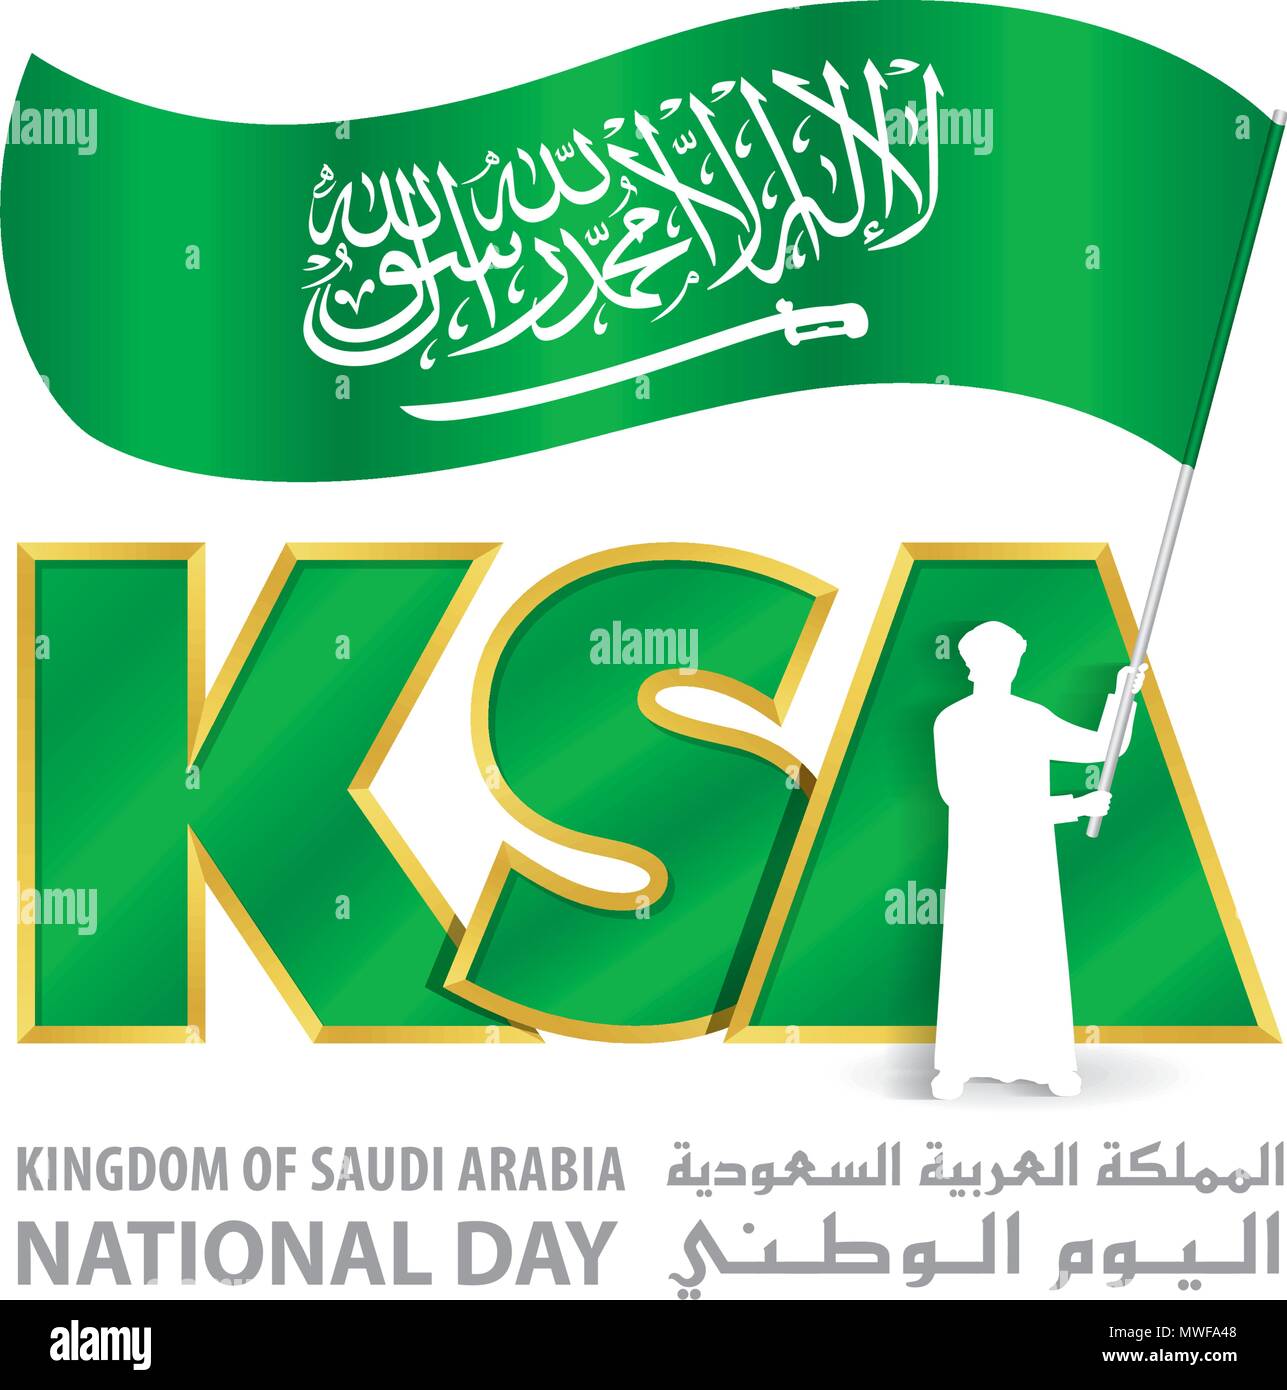 La KSA Giornata Nazionale Logo con giovani Arabia tenere bandiera, un iscrizione in inglese e arabo 'Regno di Arabia Saudita Giornata nazionale', illustrazione vettoriale Illustrazione Vettoriale